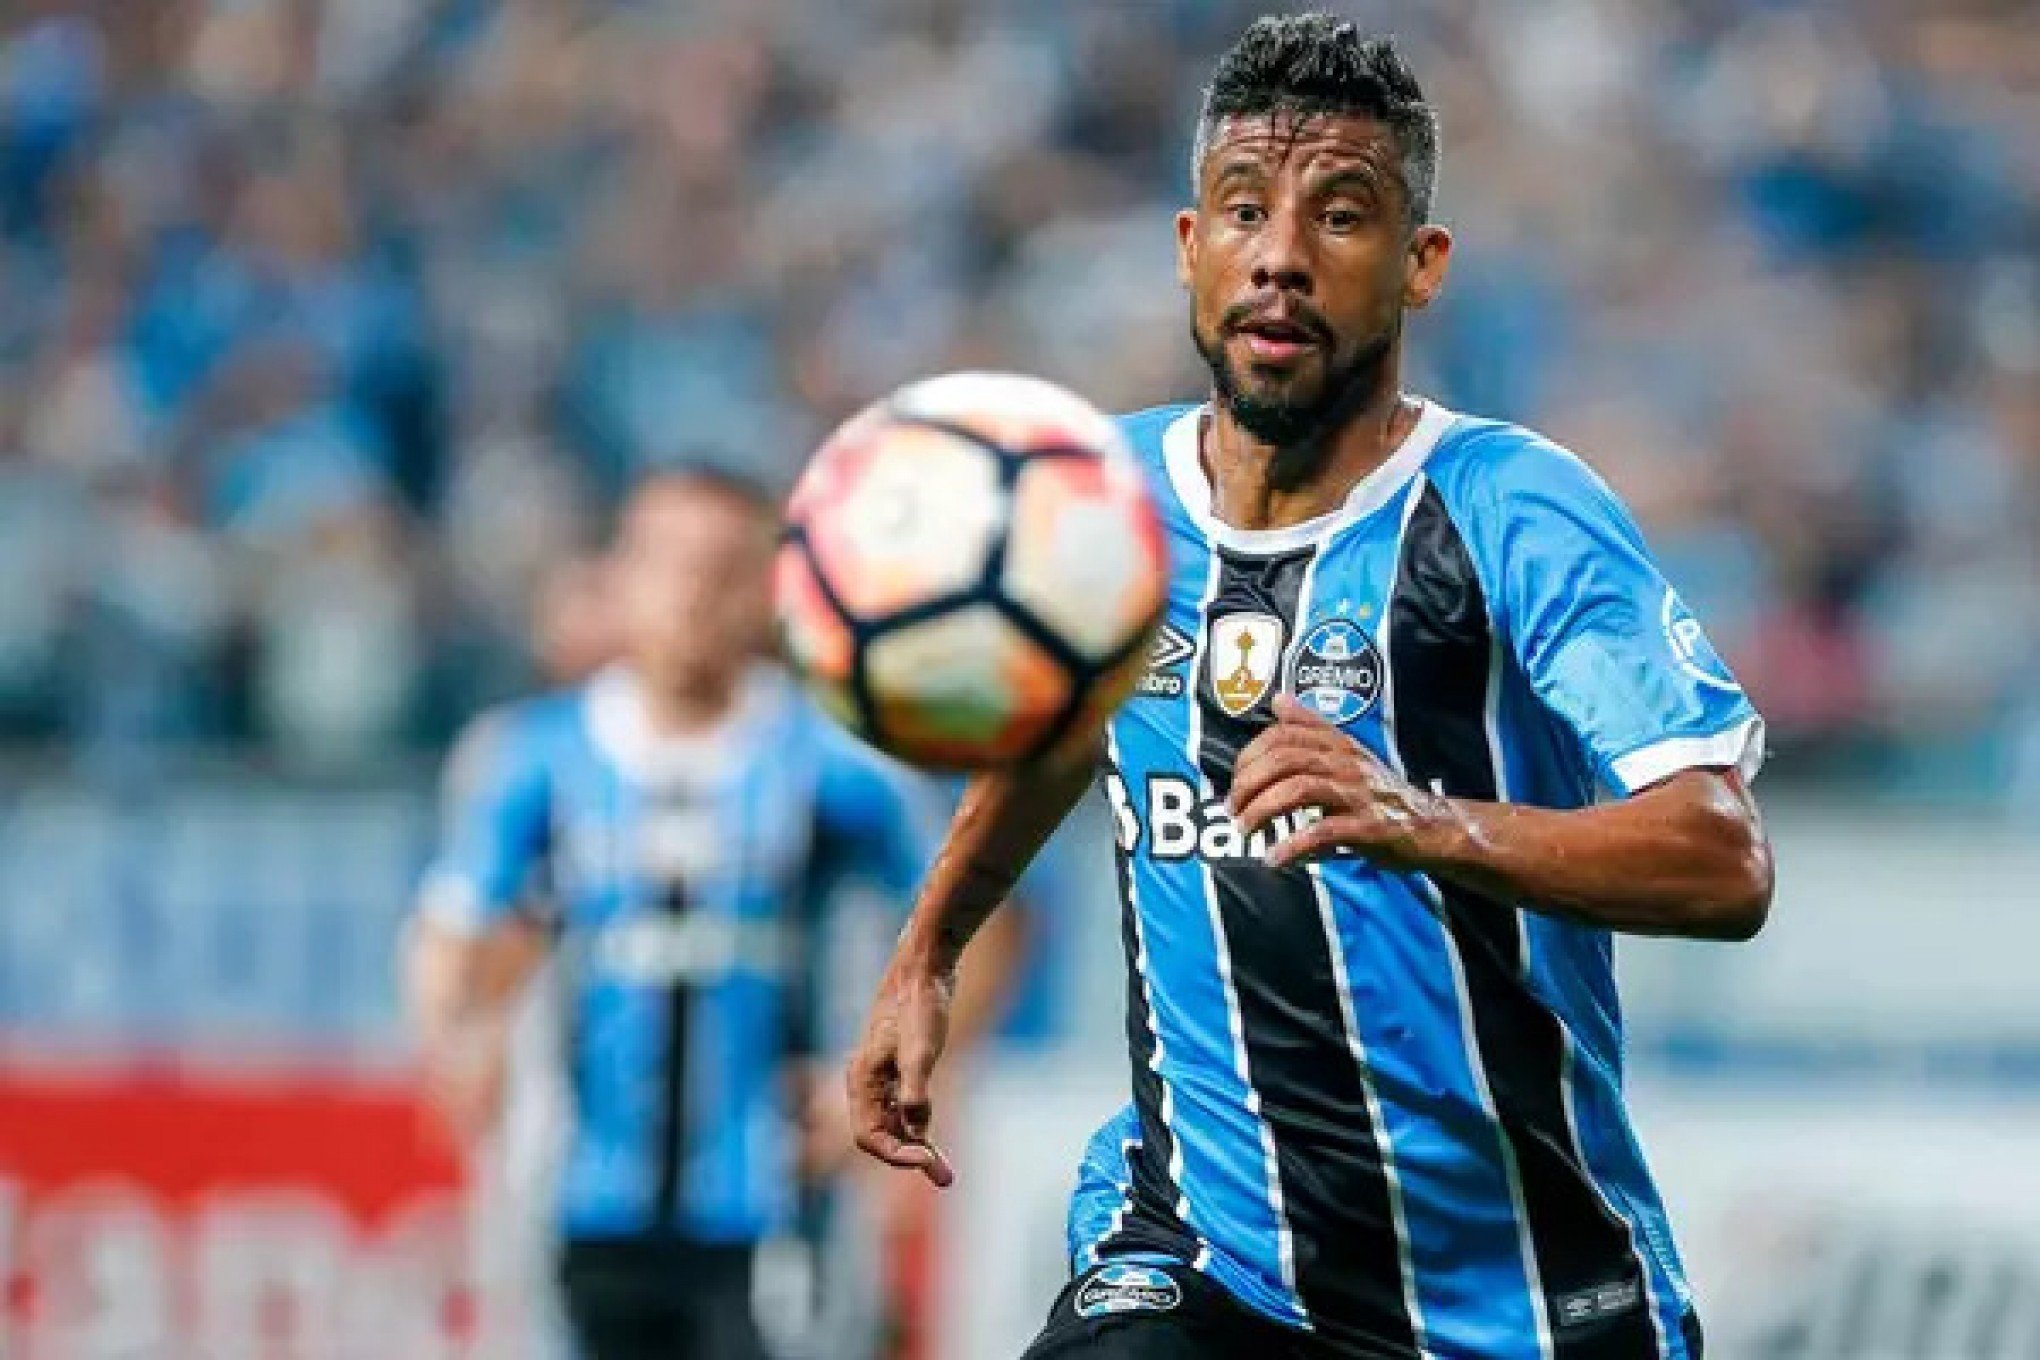 ONG de ex-jogador do Grêmio é suspeita de superfaturamento em compras com dinheiro público